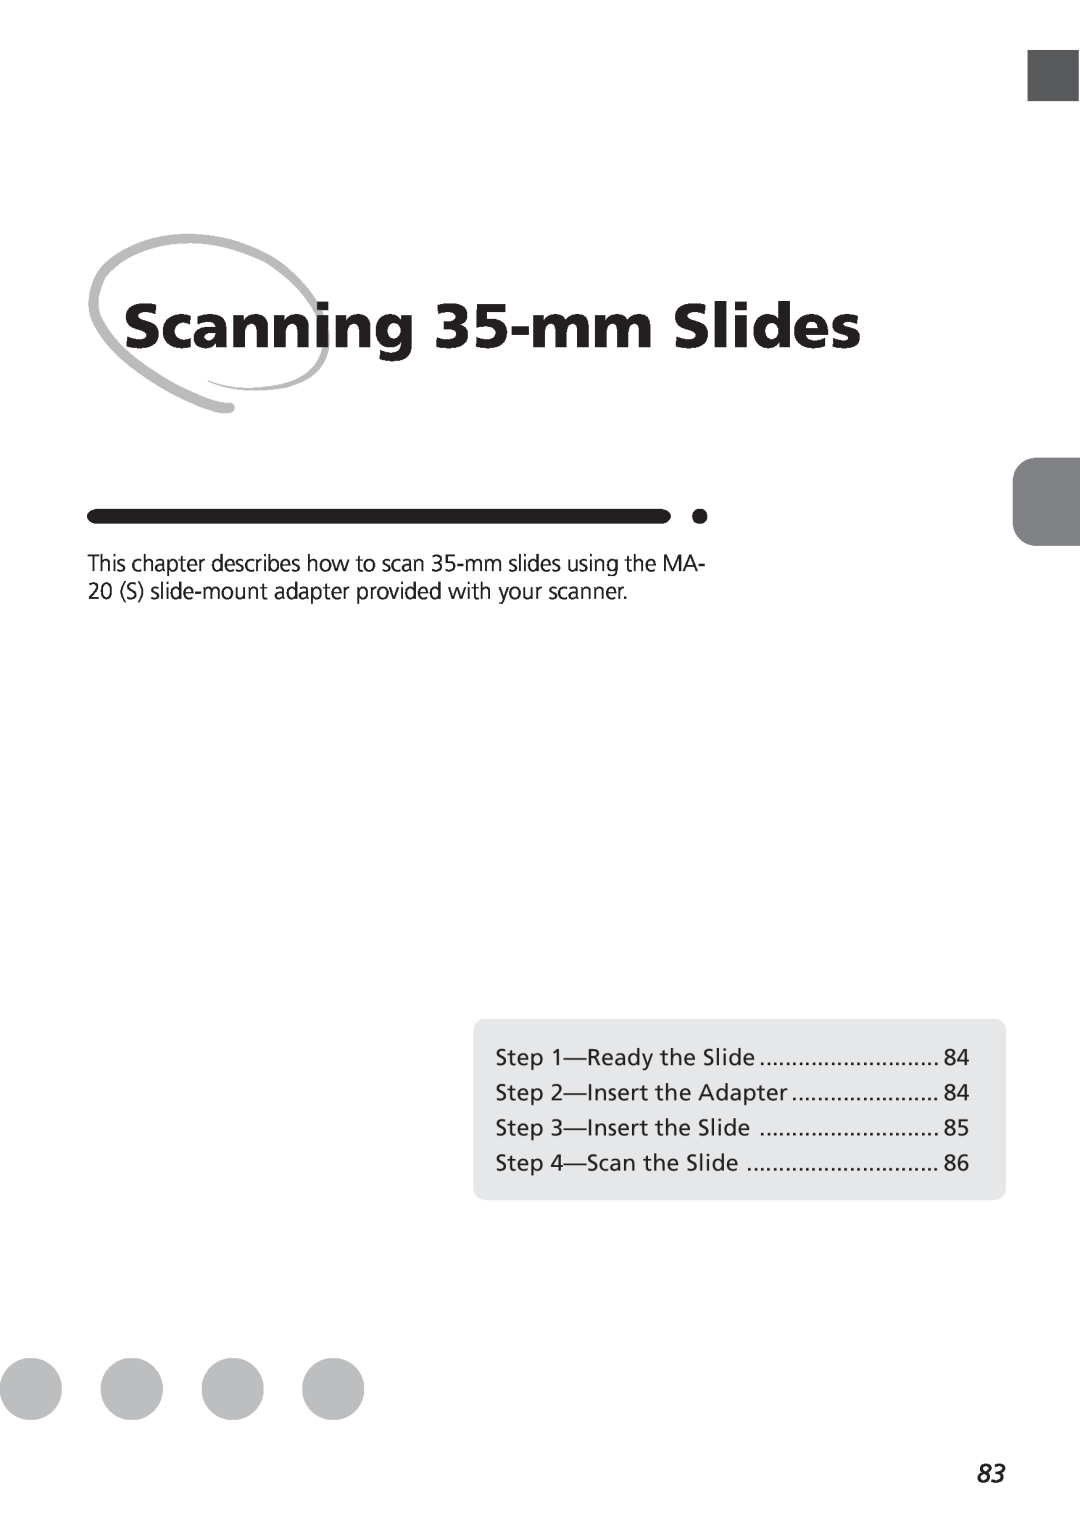 Nikon LS4000 user manual Scanning 35-mm Slides, Ready the Slide, Insert the Adapter, Insert the Slide, Scan the Slide 